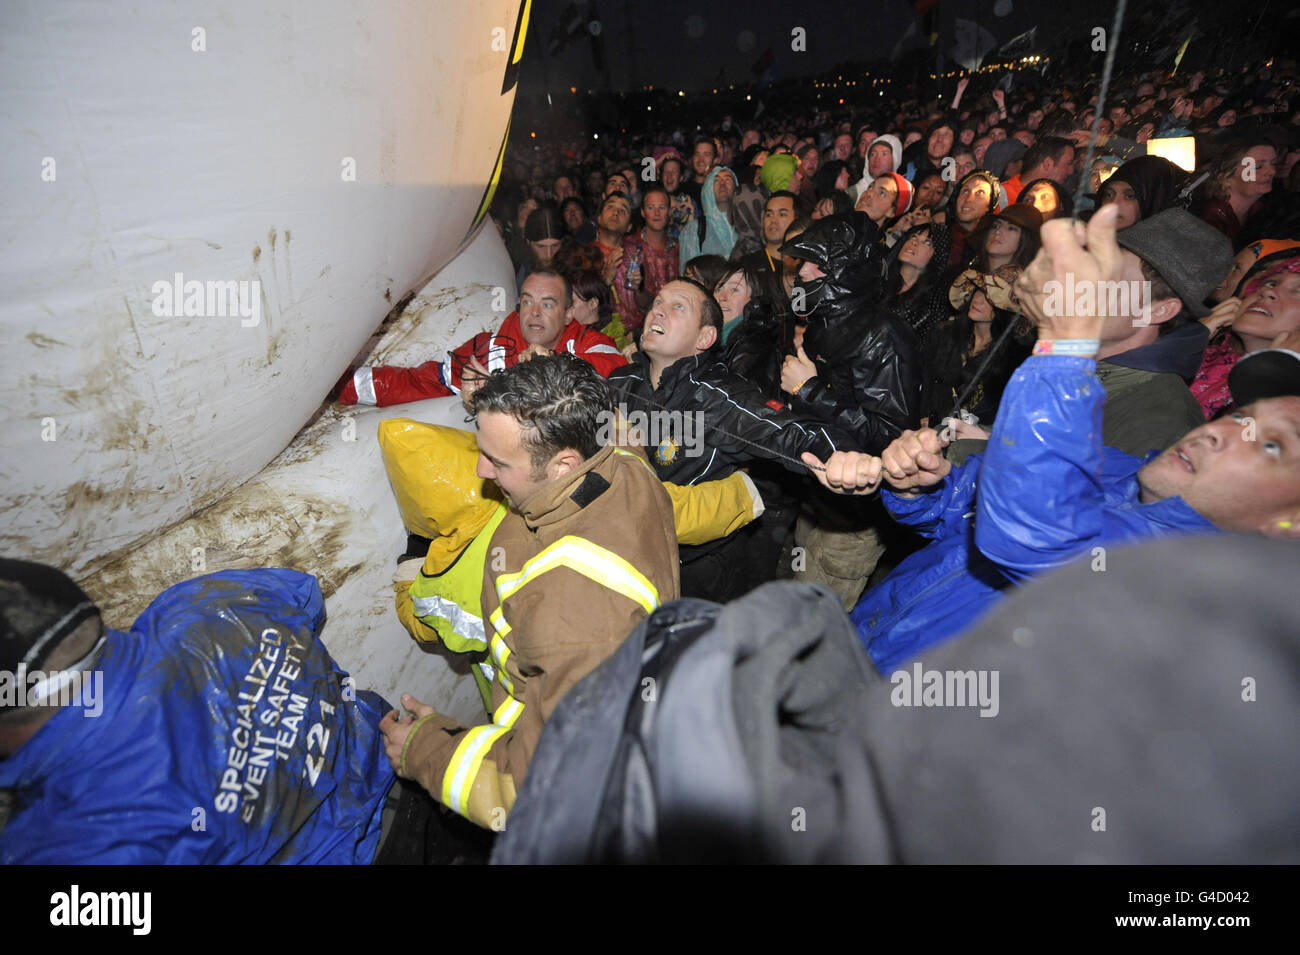 Sicherheitspersonal und Mitglieder der direkten Aktionsgruppe Art Uncut, tossle über einen 20 Fuß großen Ballon mit der Botschaft "U Pay Your Tax 2", während die Rockband U2 auf der Pyramid Stage beim Glastonbury Musikfestival in Worthy Farm, Pilton auftreten. Stockfoto